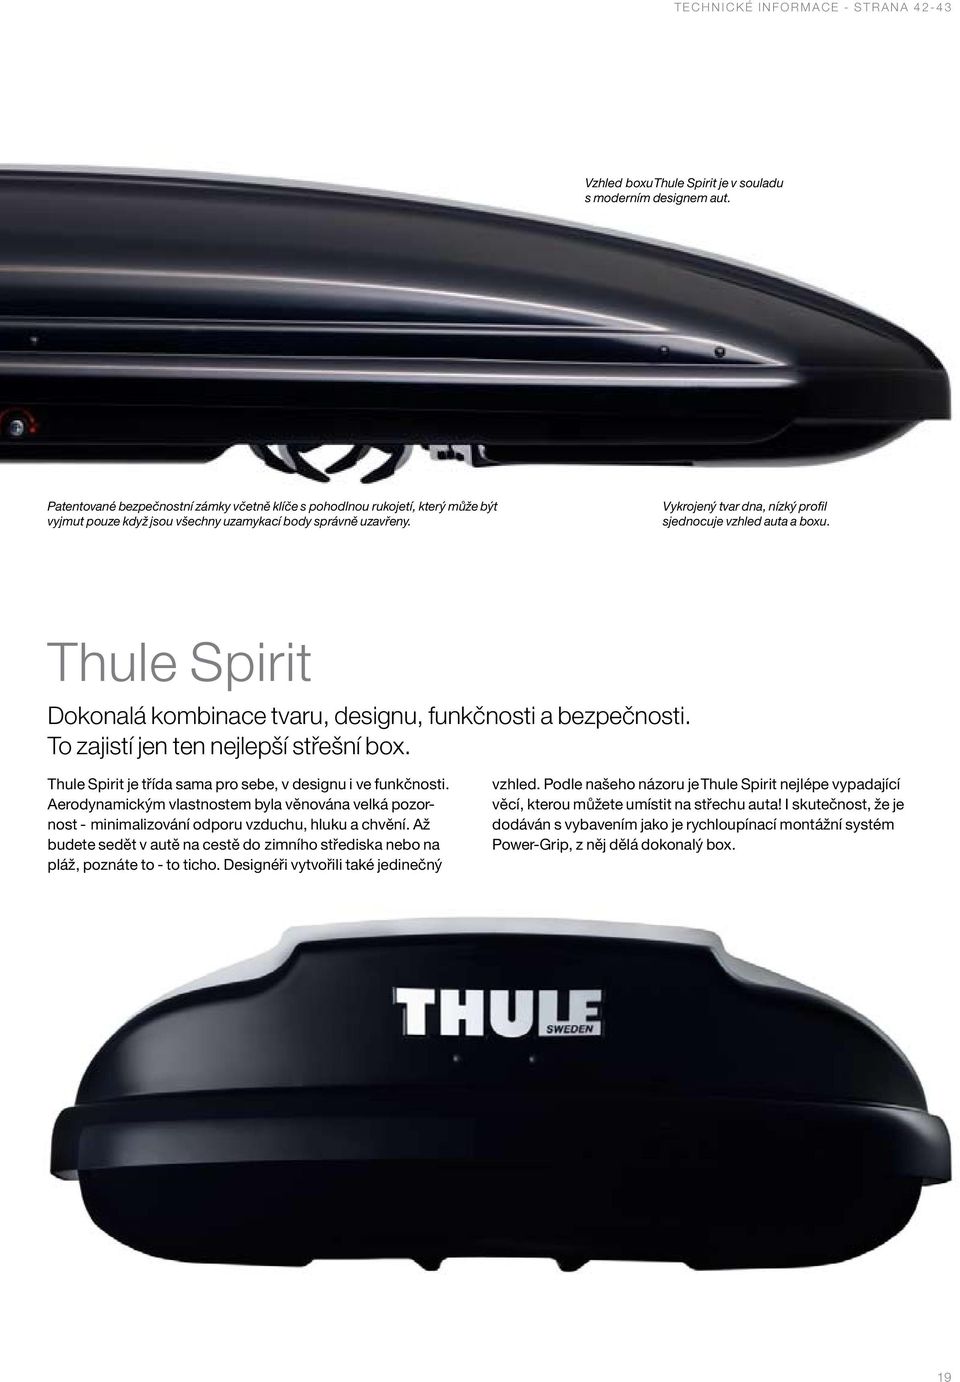 Vykrojený tvar dna, nízký profil sjednocuje vzhled auta a boxu. Thule Spirit Dokonalá kombinace tvaru, designu, funkčnosti a bezpečnosti. To zajistí jen ten nejlepší střešní box.